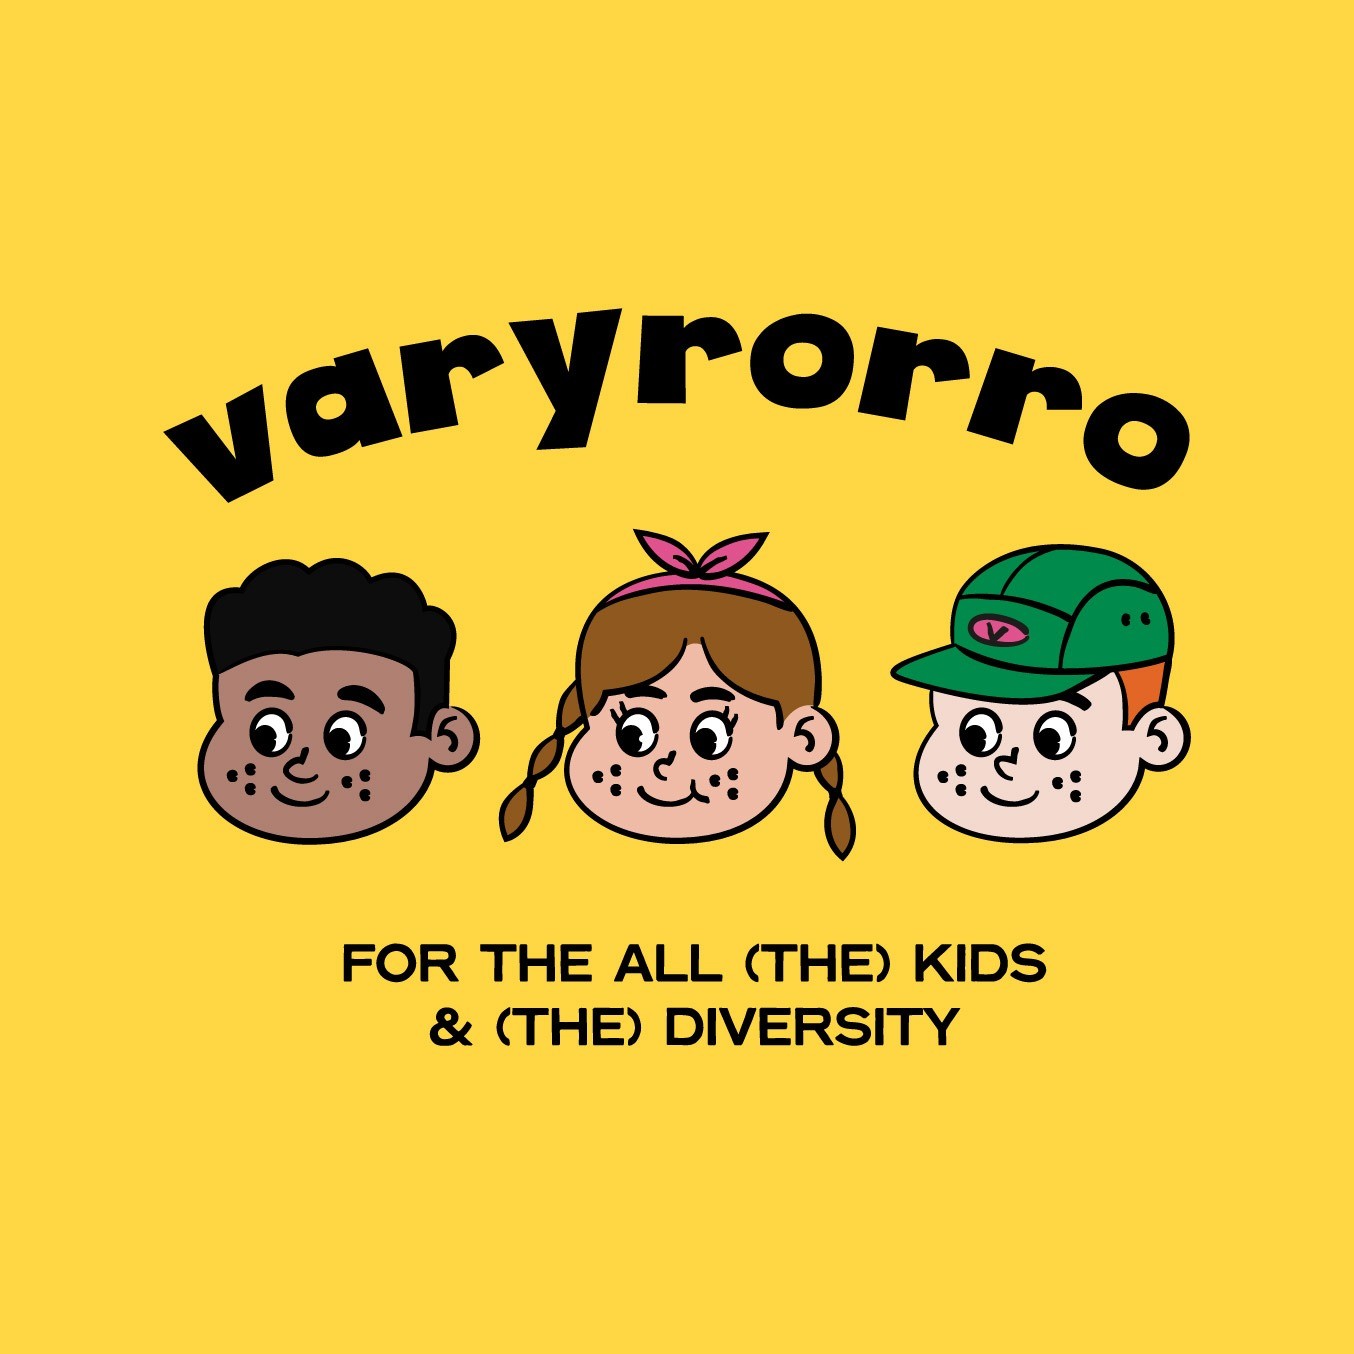 포트폴리오-varyrorro / 키즈웨어 브랜드